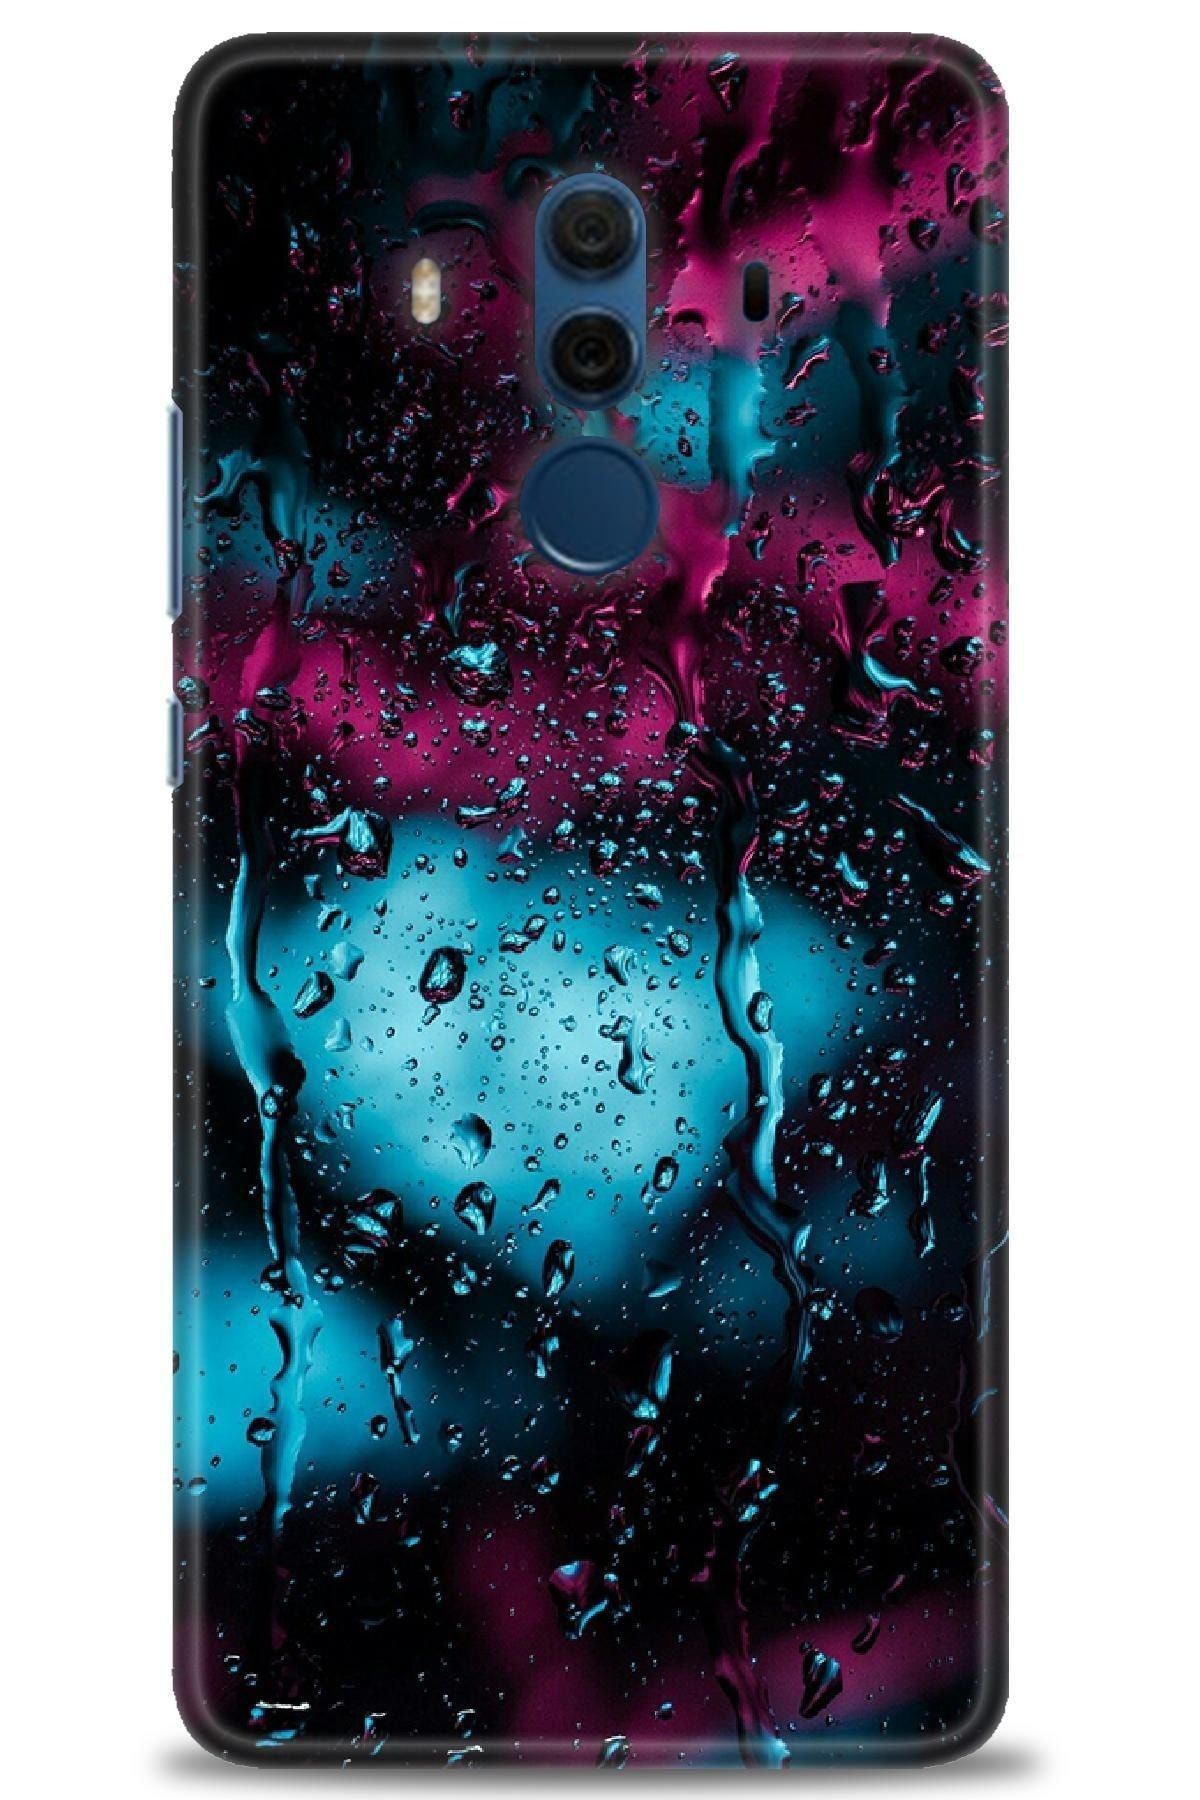 Genel Markalar Huawei Mate 10 Pro Kılıf Hd Baskılı Kılıf - Işıklı Yağmur + Nano Micro Ekran Koruyucu